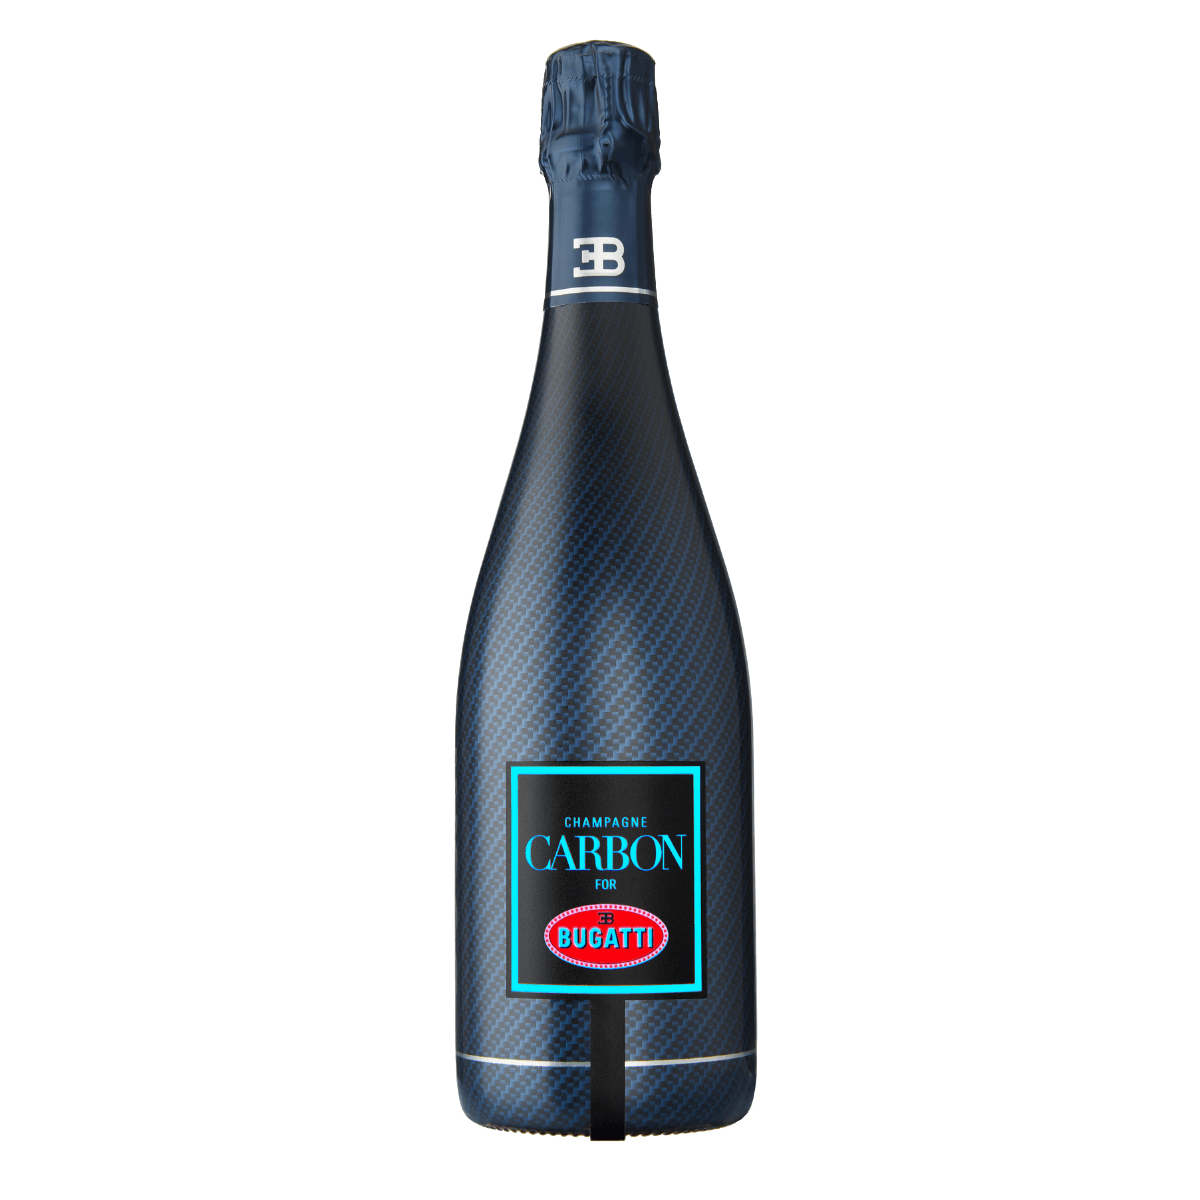 Carbon Bugatti – Collection USA Champagne